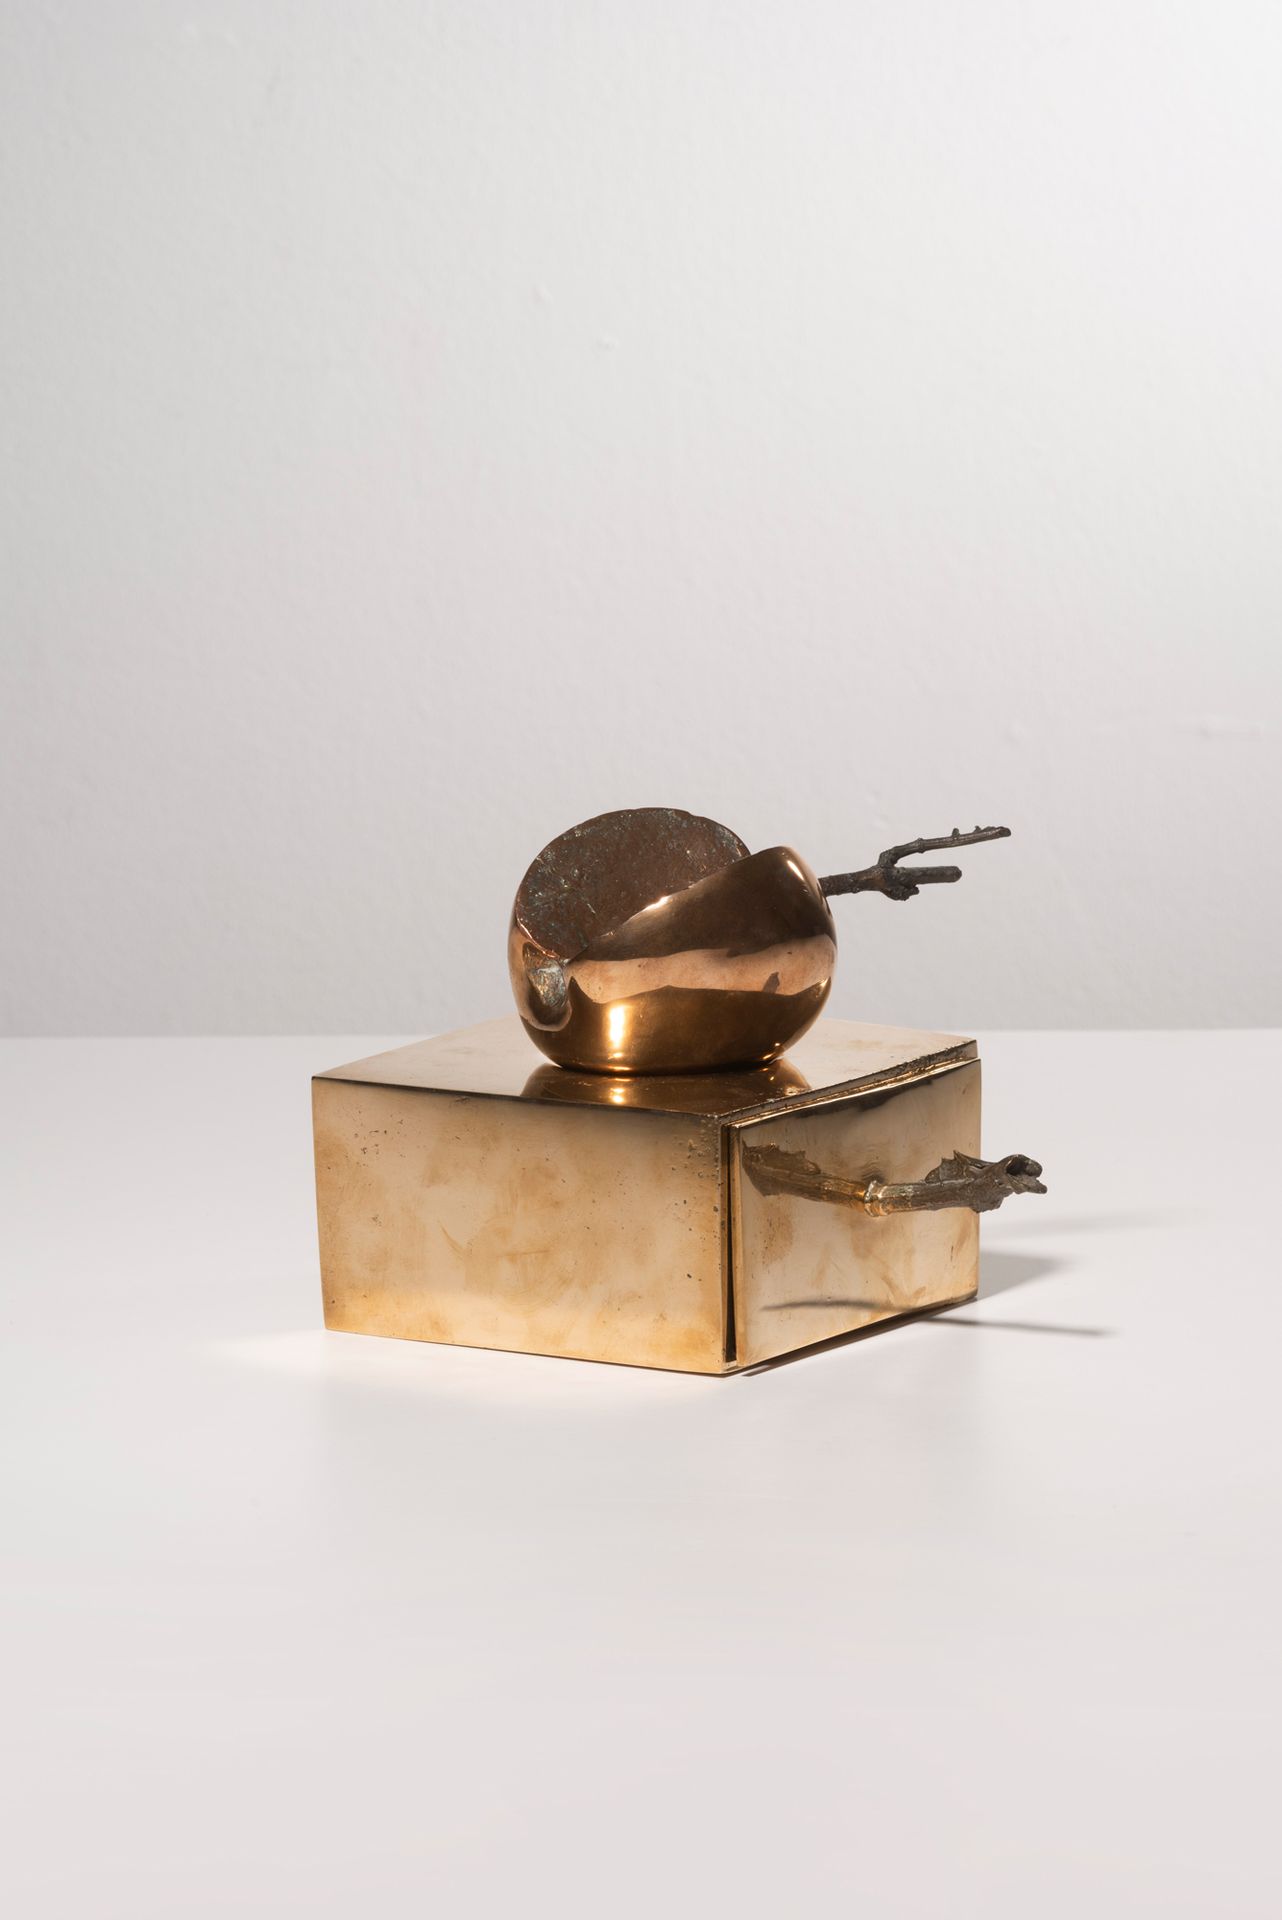 ALIK CAVALIERE (1926-1998) Manzana y cajón, circa 1968
Bronce con pátina dorada &hellip;